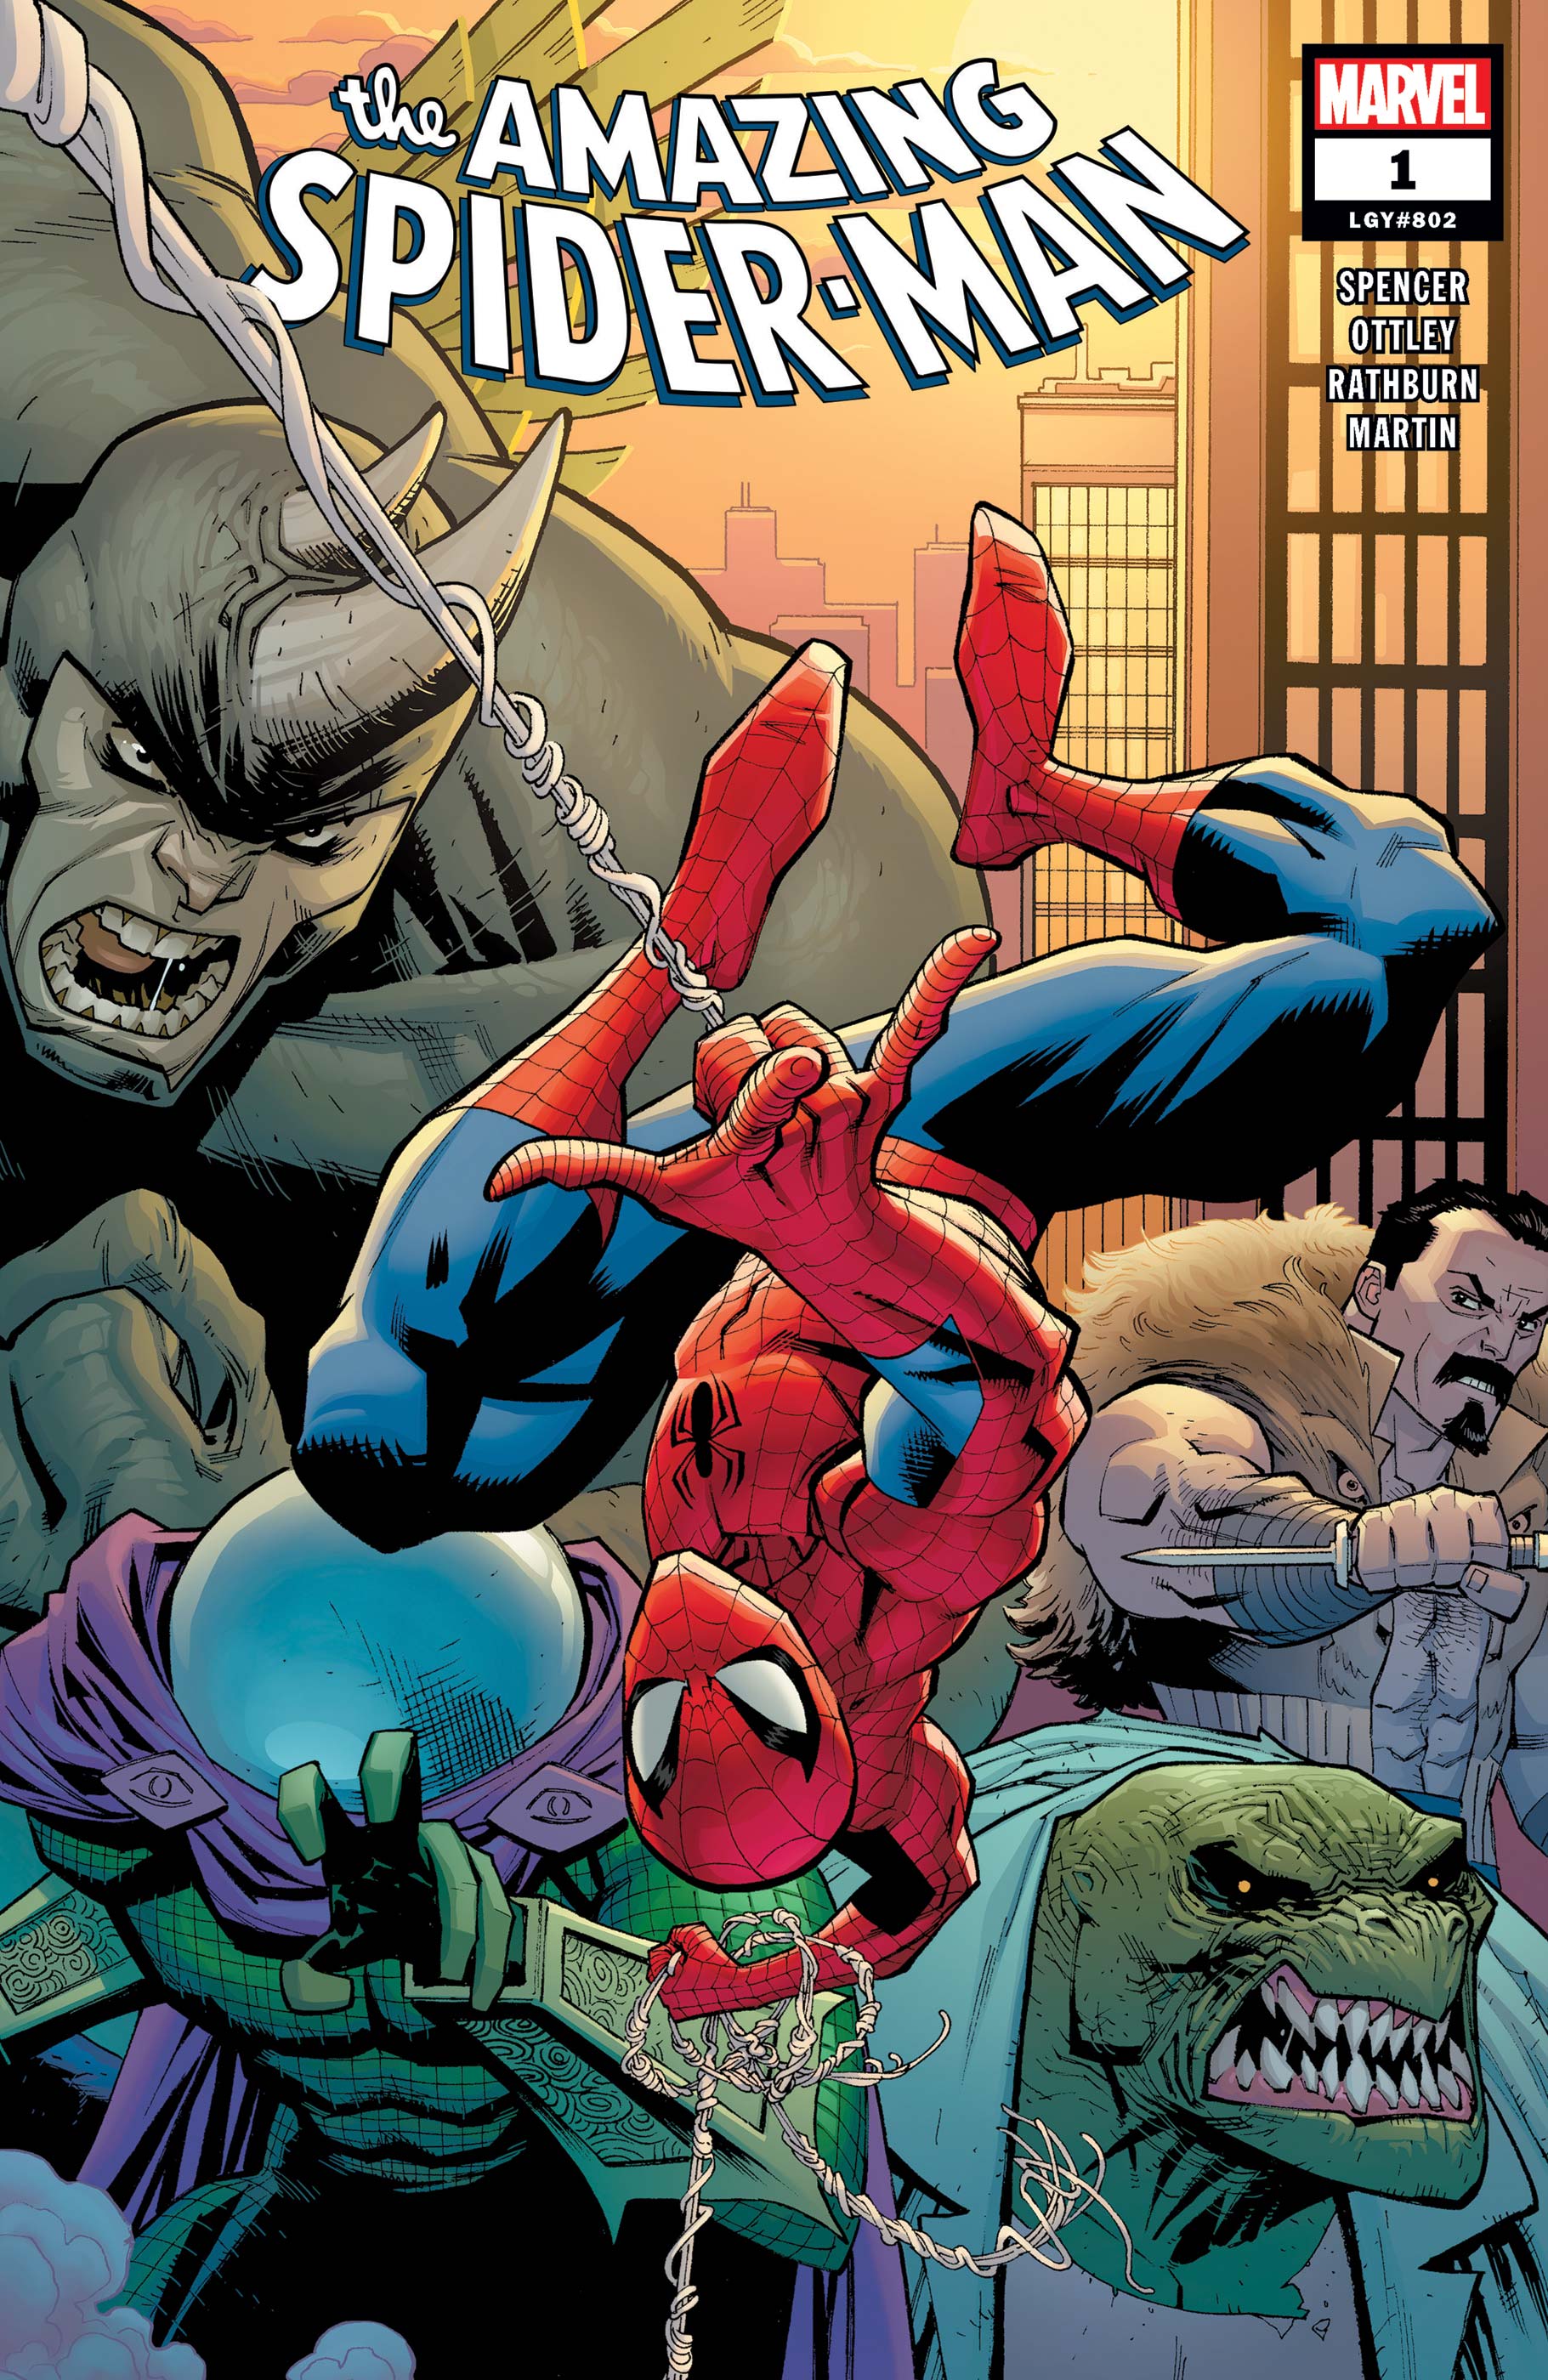 Spider man comics 2018